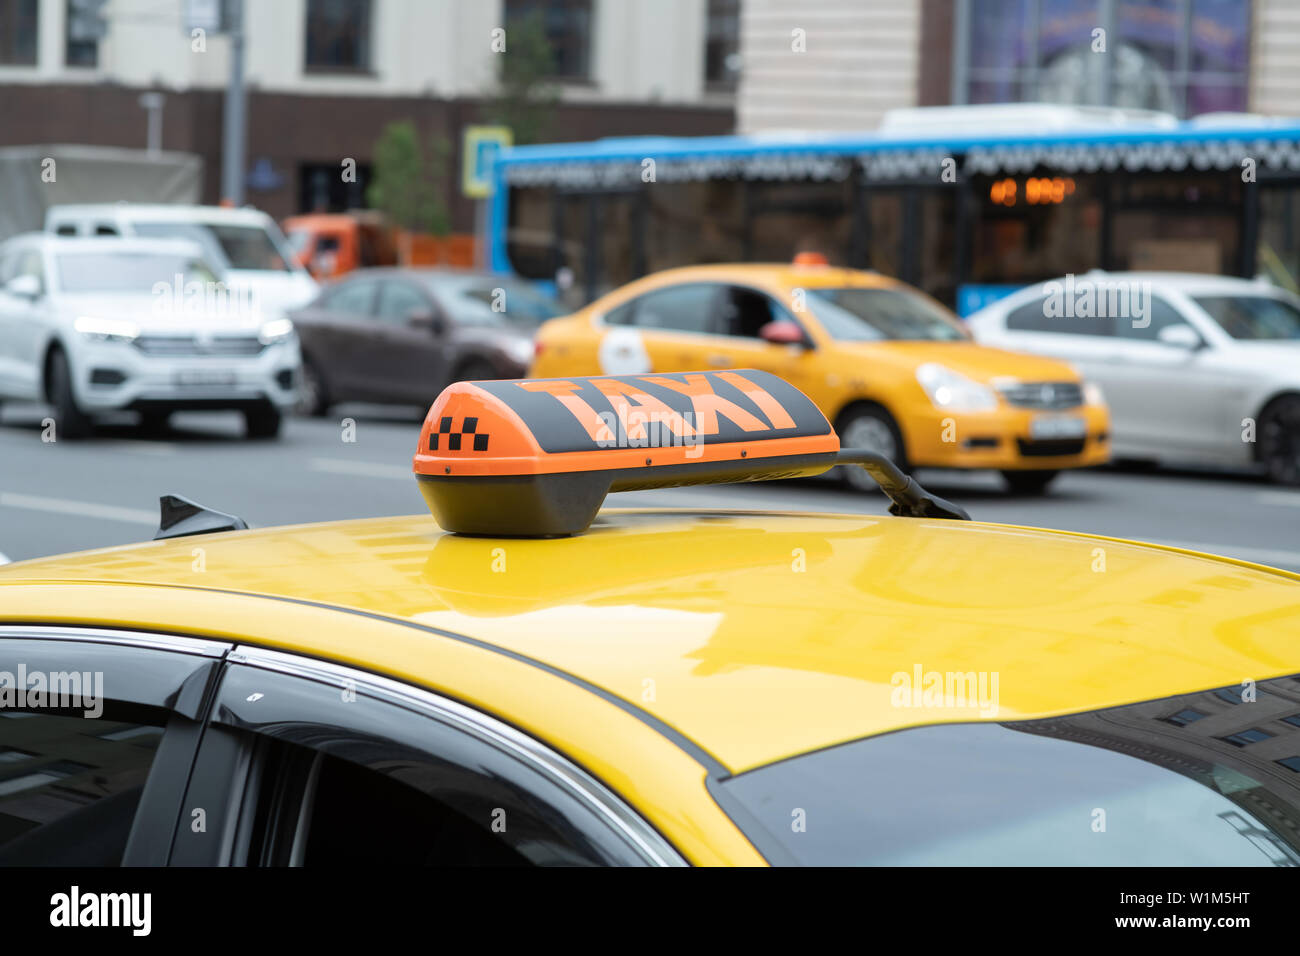 Descripción: taxi amarillo con signo de taxi en el techo aparcado en la calle de la ciudad esperando a recoger pasajeros.El taxi está aparcado en la calle de la Foto de stock